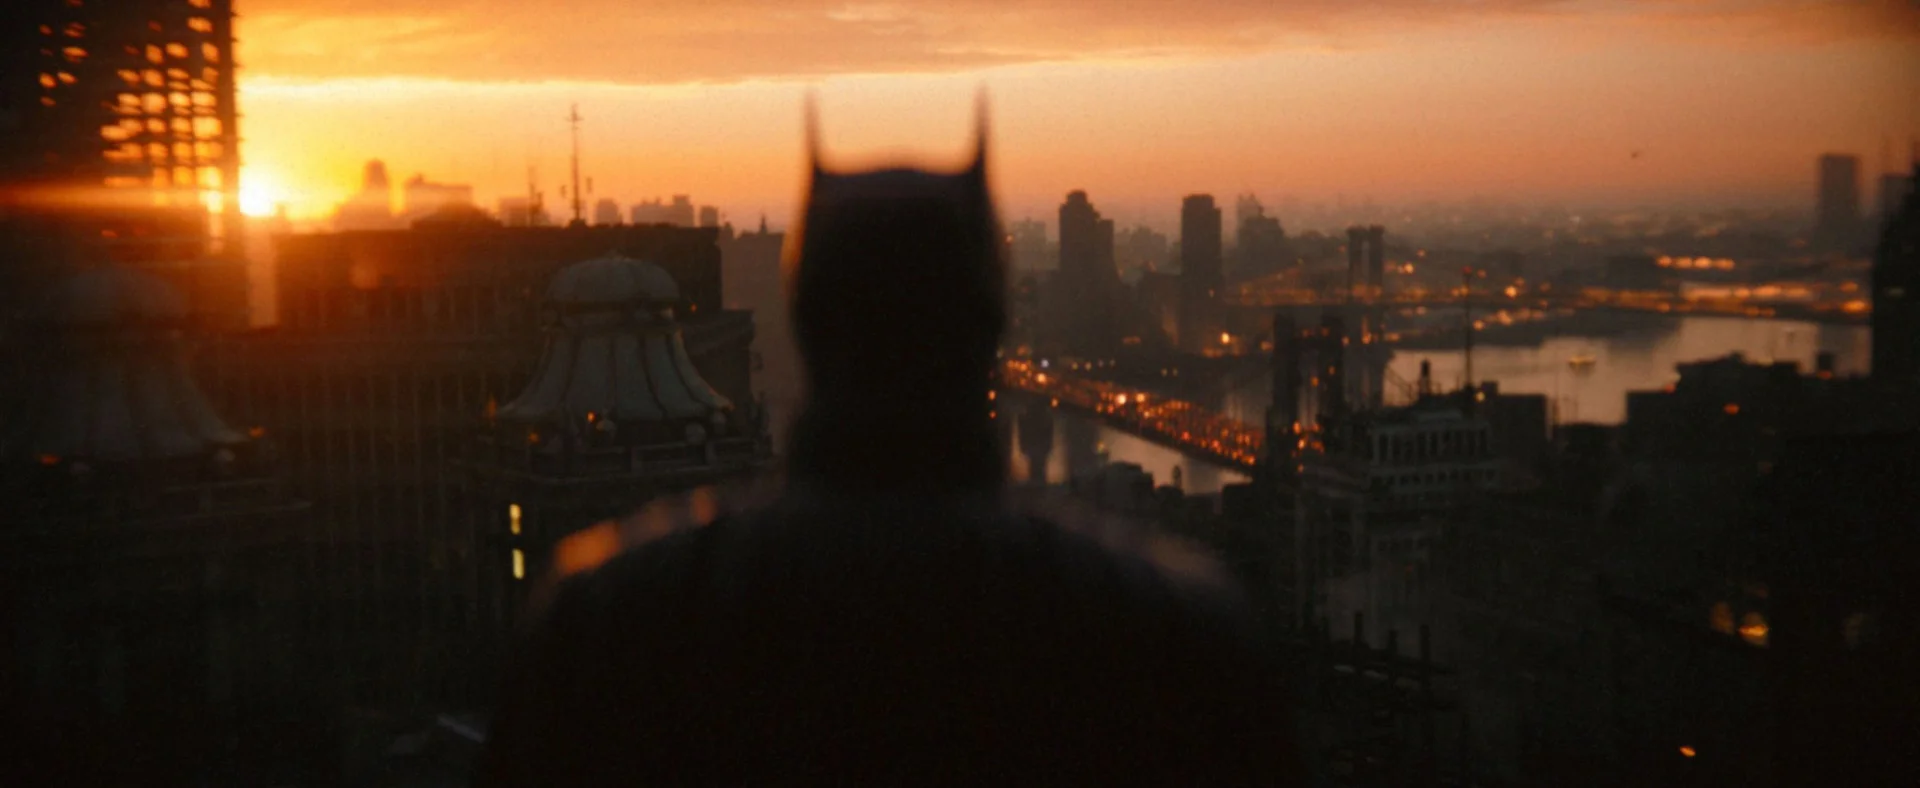 «Это не просто сигнал»: на DC FanDome покажут новый трейлер «Бэтмена» - фото 1